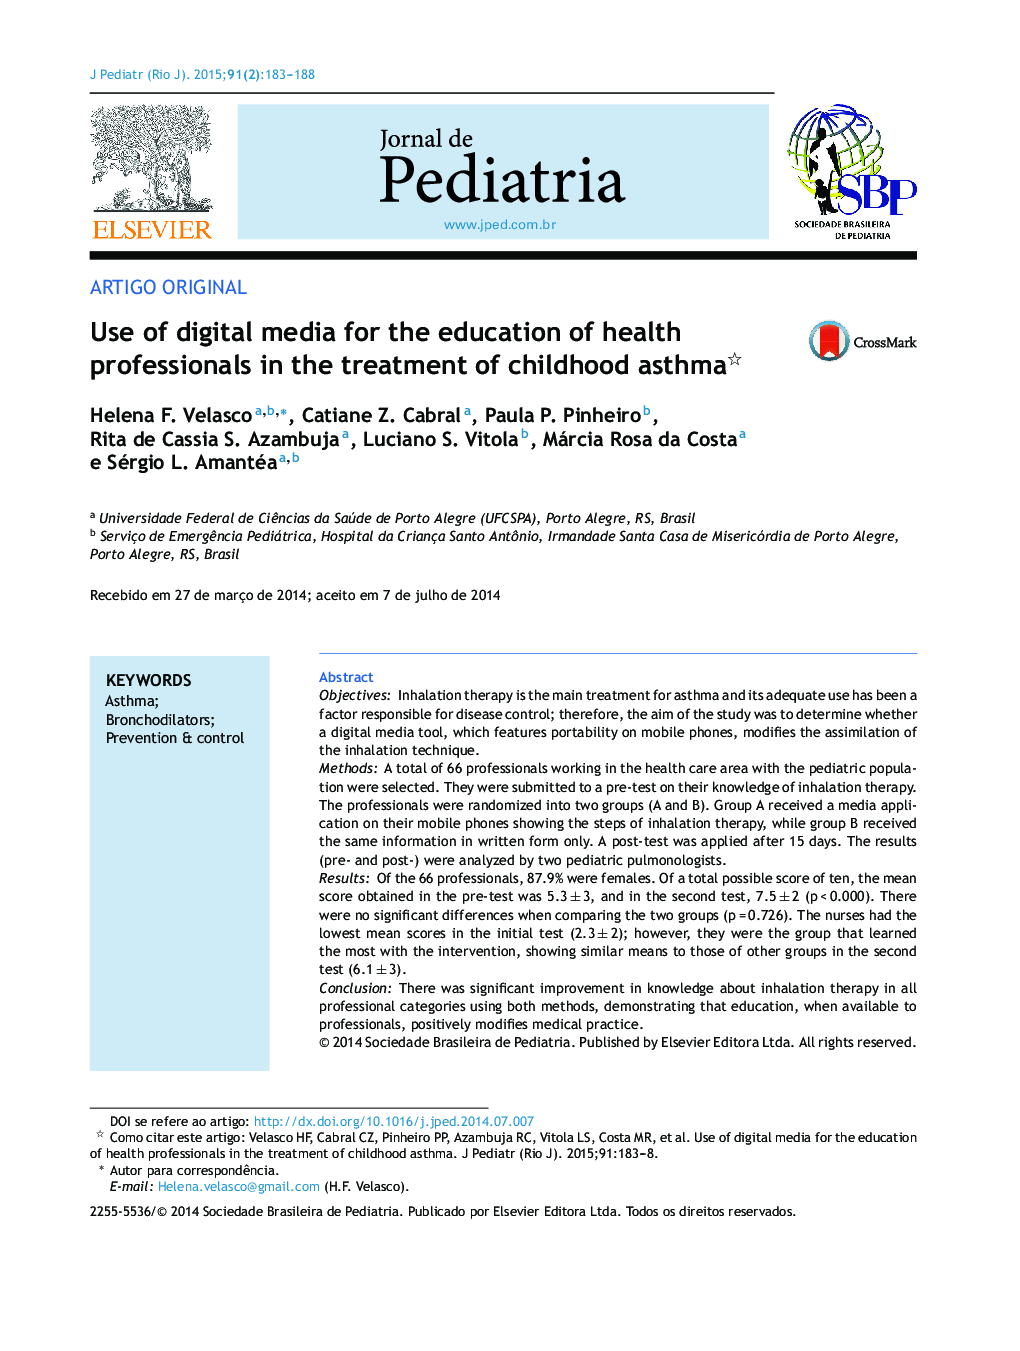 استفاده از رسانه های دیجیتال برای آموزش متخصصان بهداشت در درمان آسم در دوران کودکی؟ 